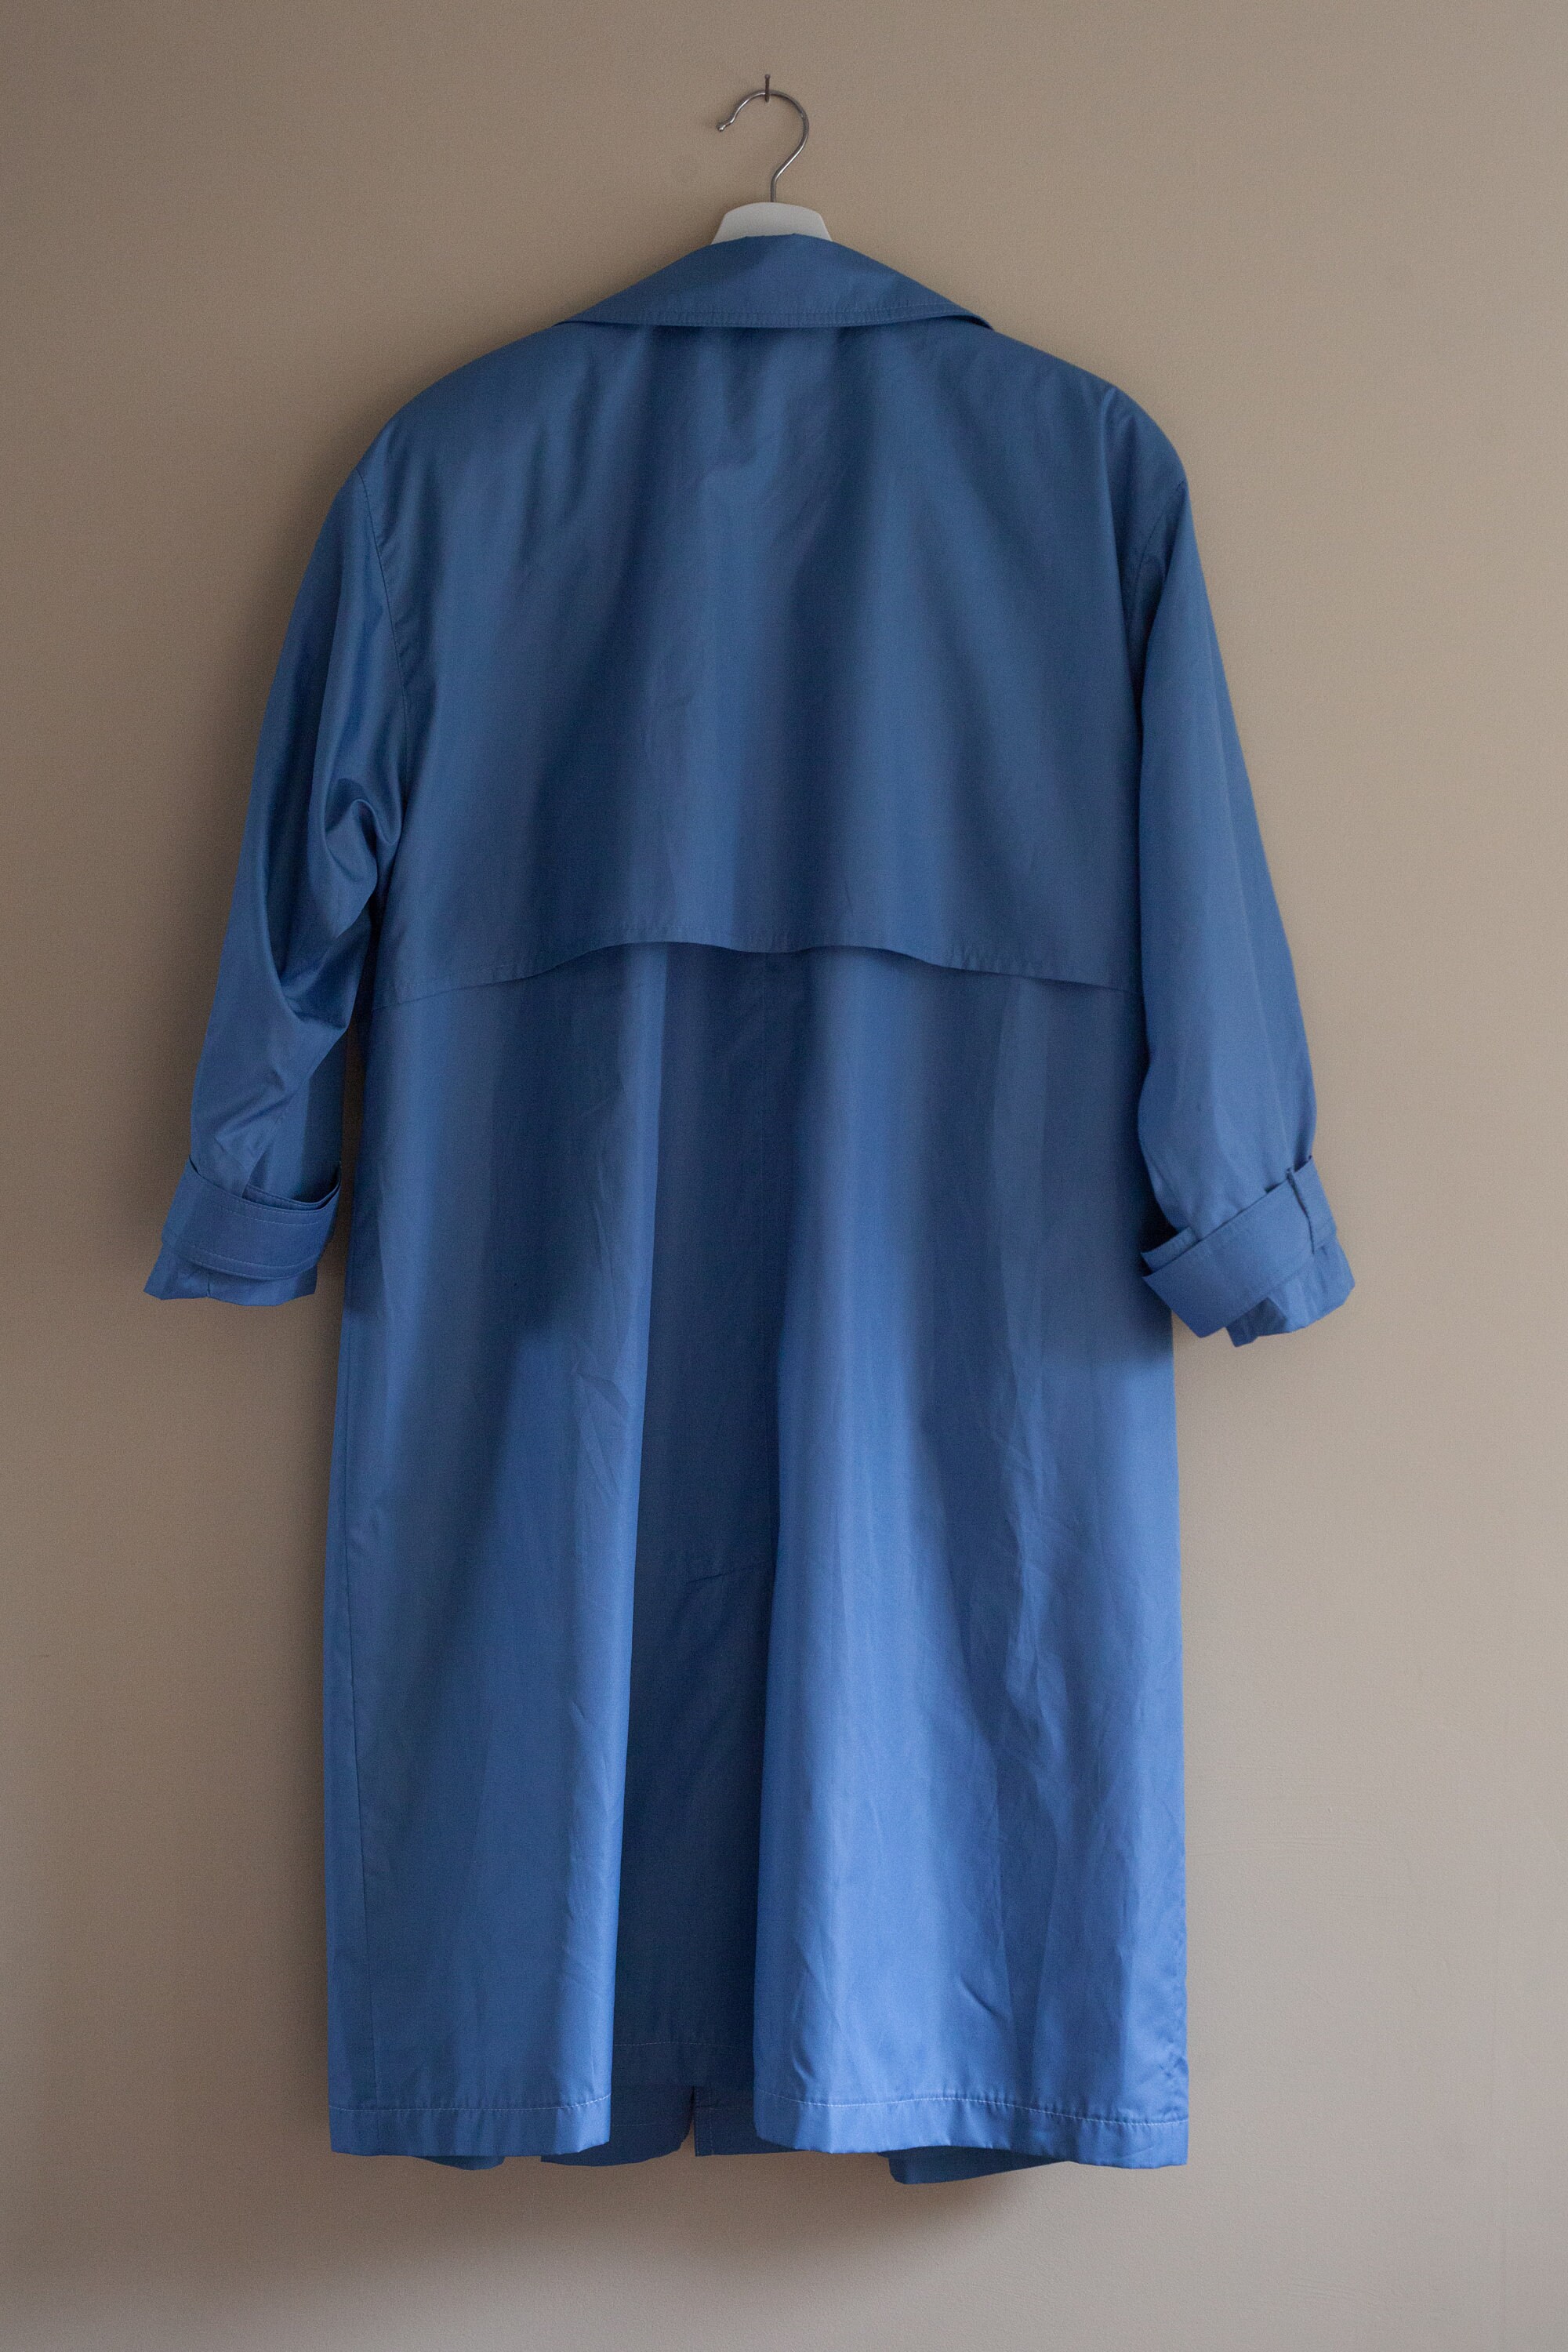 Vintage medium blue trench coat large London fog trench coat | Etsy